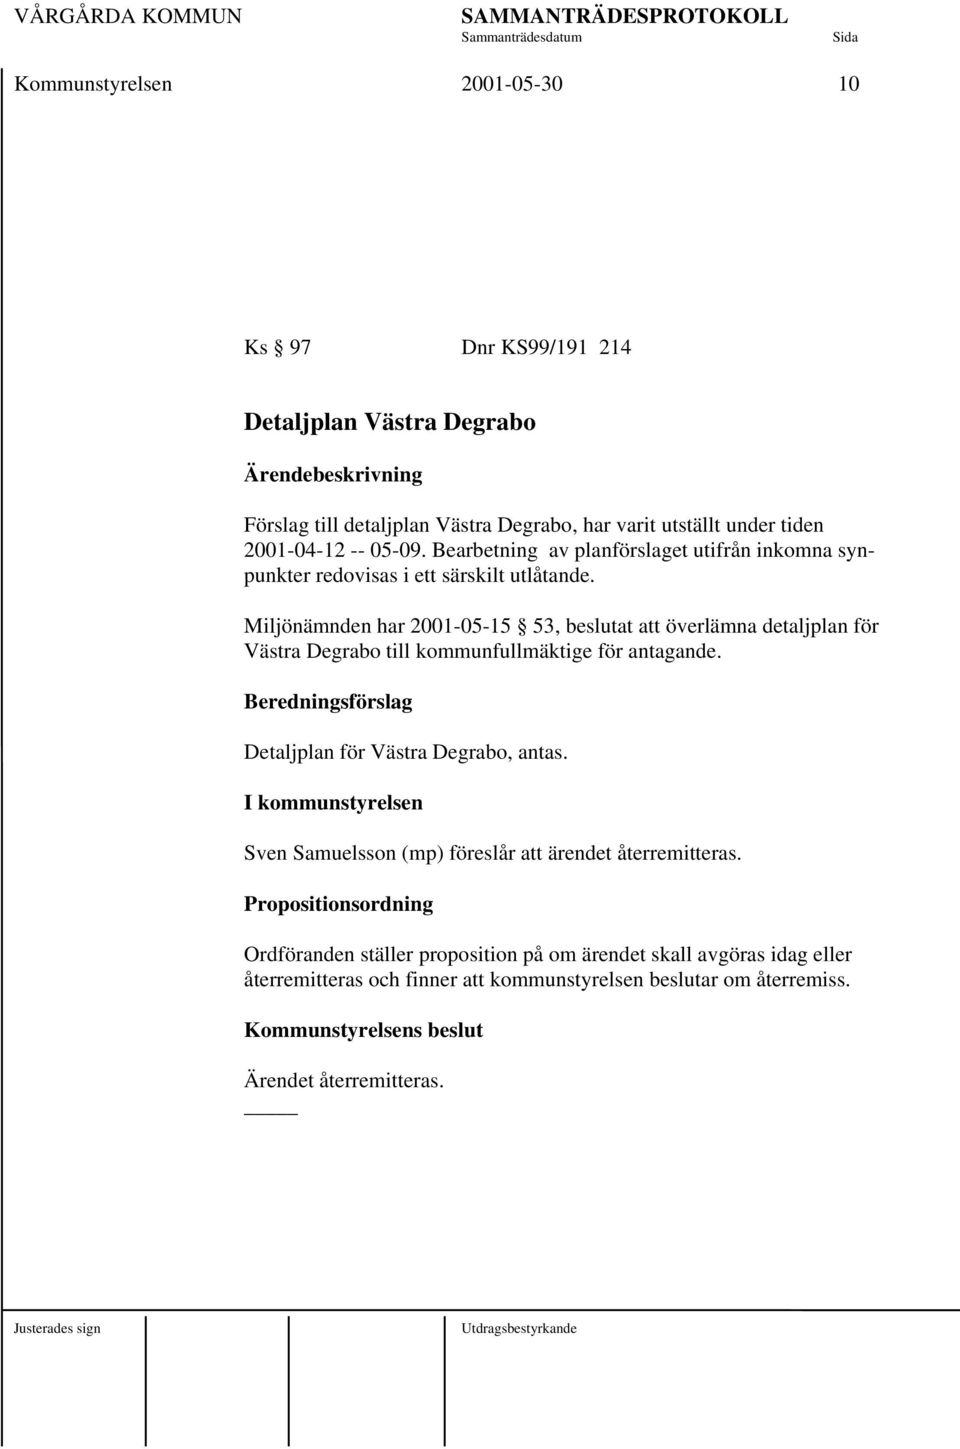 Miljönämnden har 2001-05-15 53, beslutat att överlämna detaljplan för Västra Degrabo till kommunfullmäktige för antagande. Beredningsförslag Detaljplan för Västra Degrabo, antas.